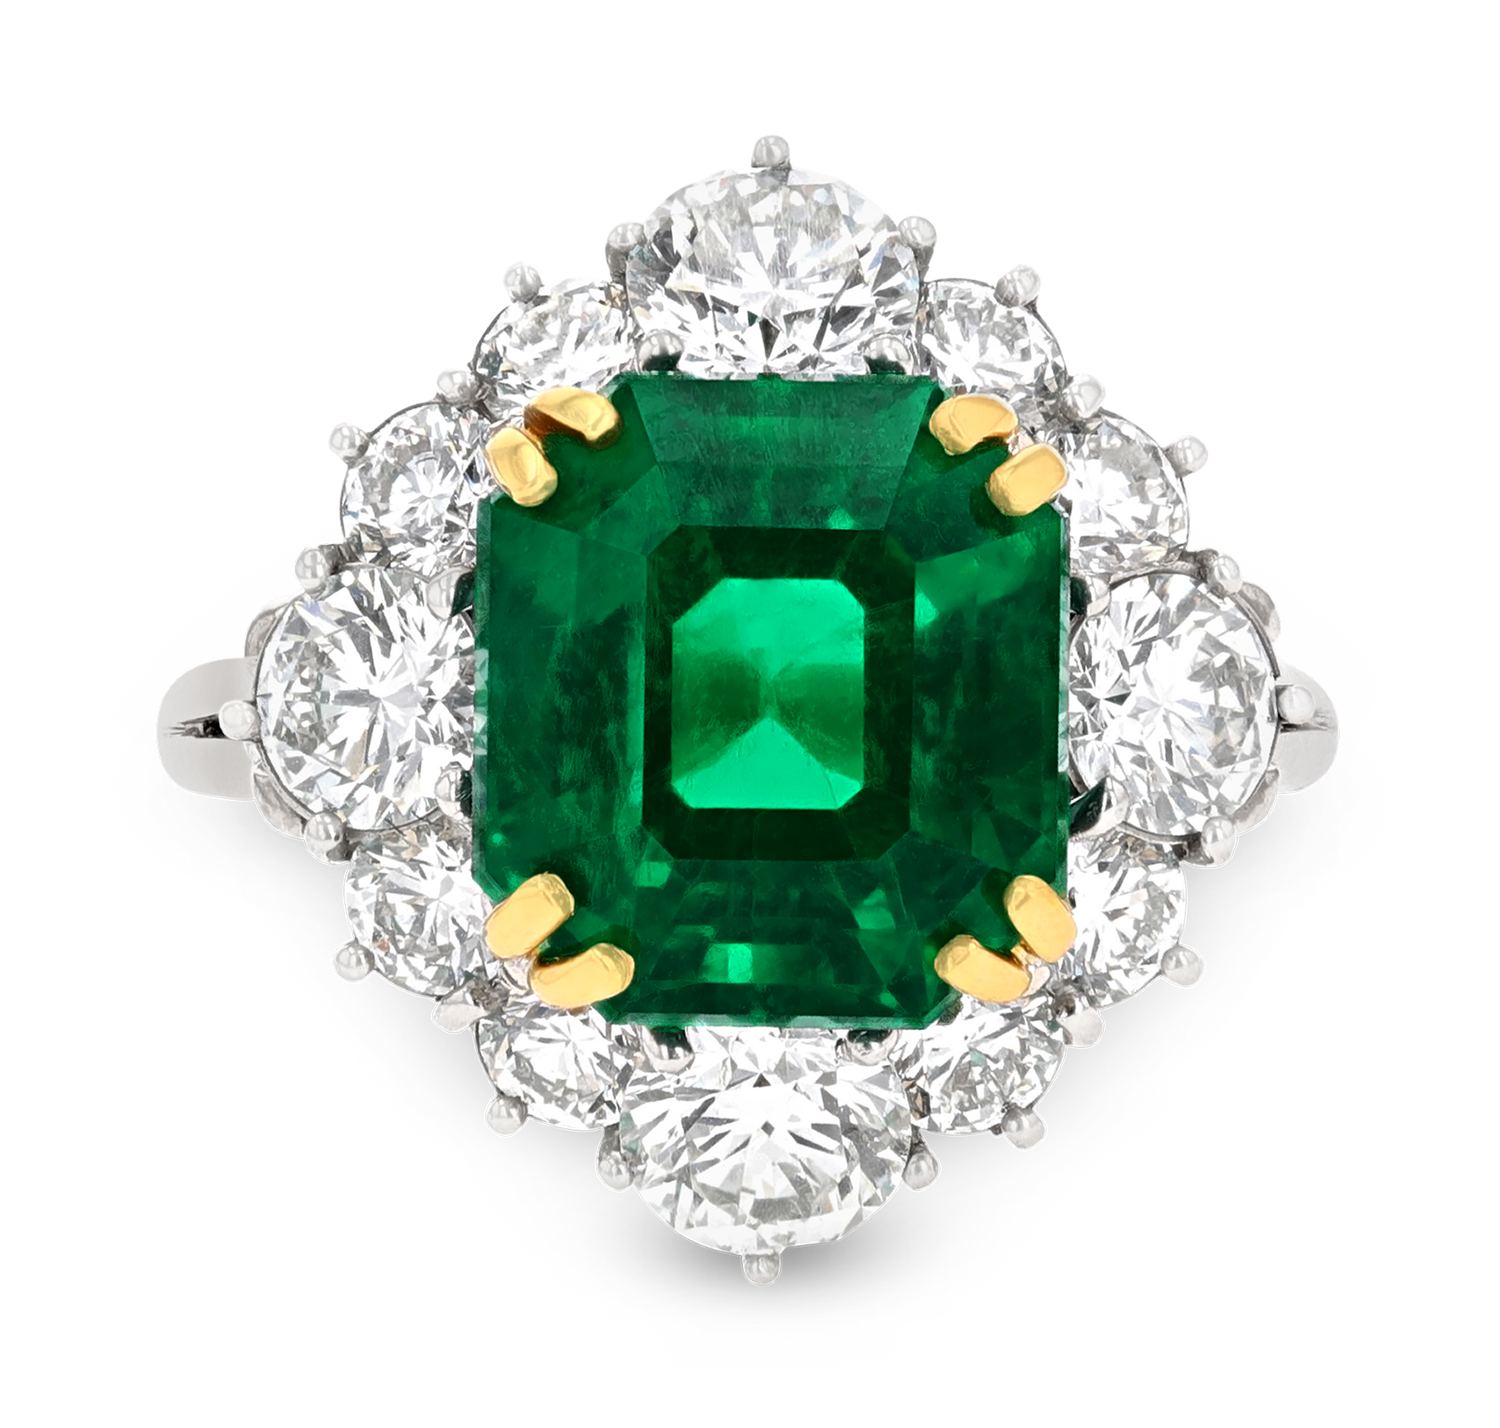 Emerald-Cut Colombian Emerald Ring, 5.71 Carats